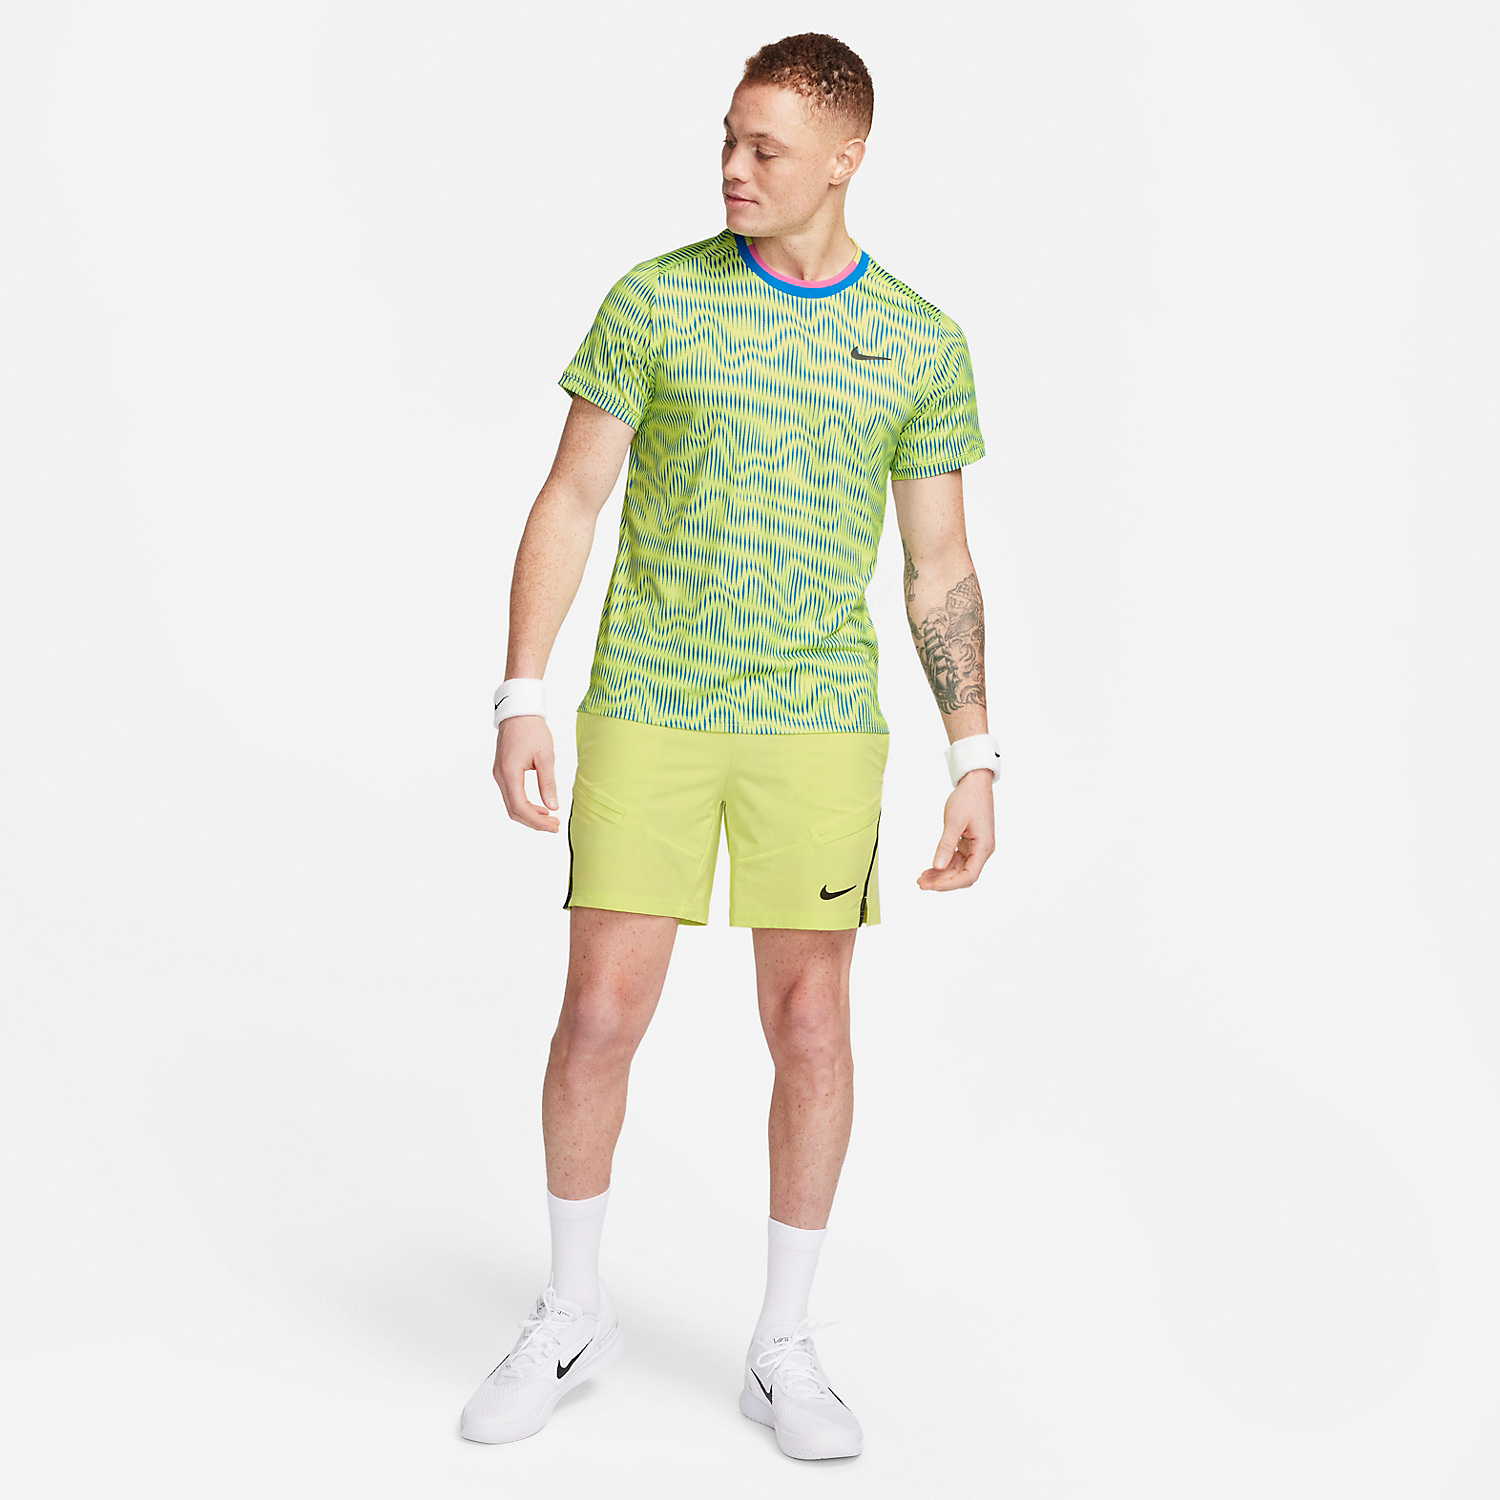 Nike Dri-FIT Advantage Camiseta - Light Lemon Twist/Light Photo Blue/Black